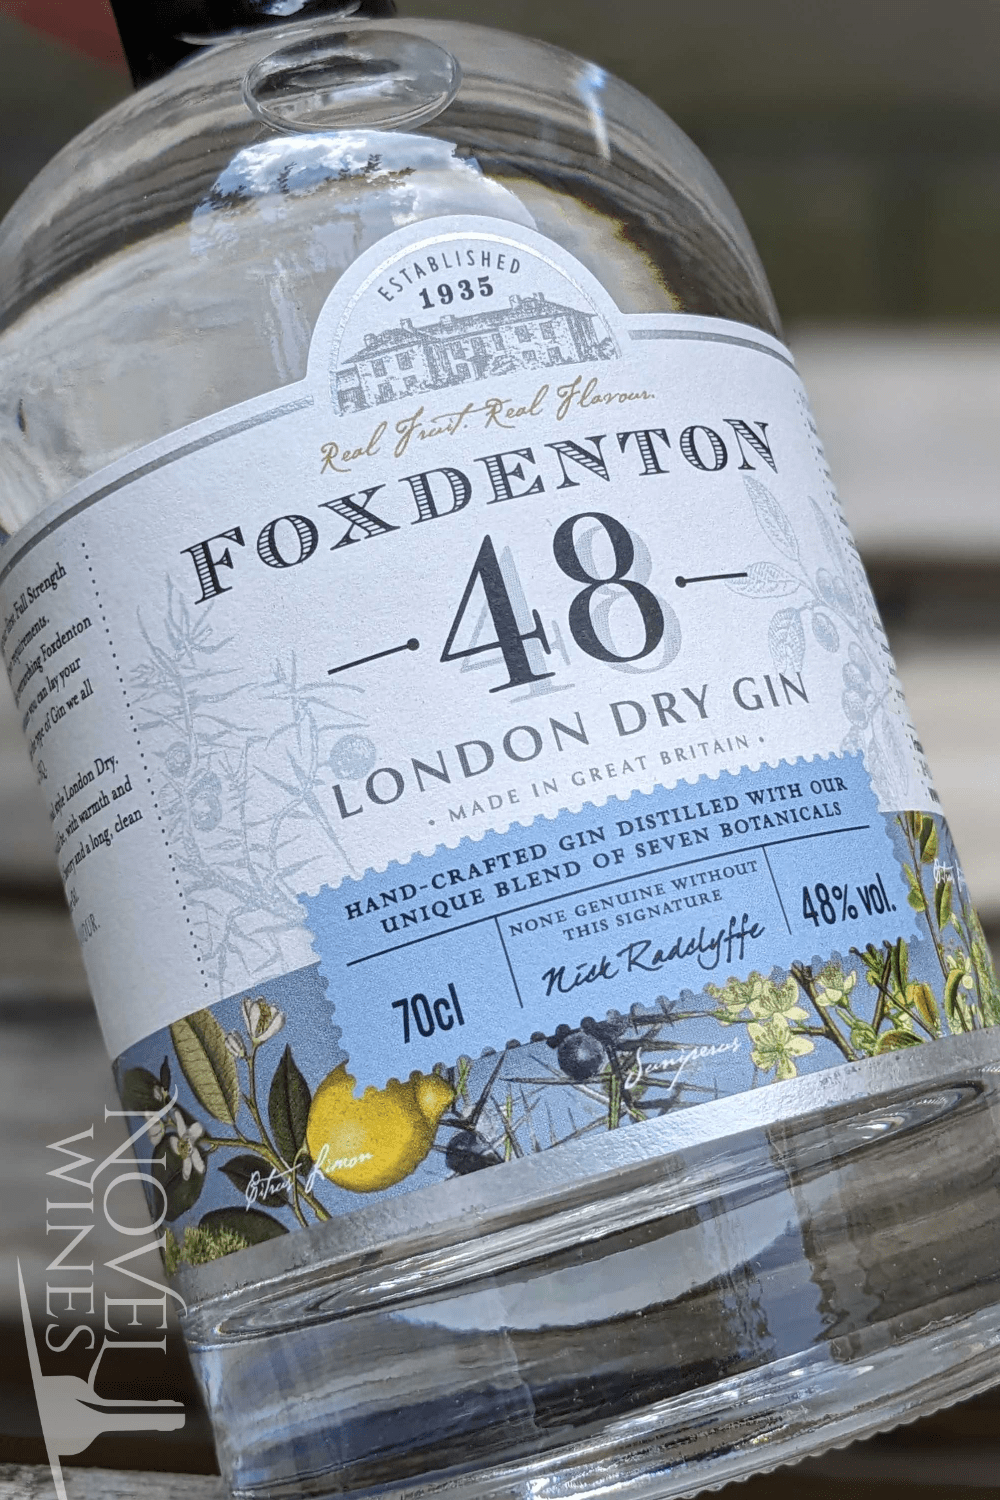 Foxdenton Estate Gin Foxdenton 'The Original 48' London Dry Gin 48.0% abv, England